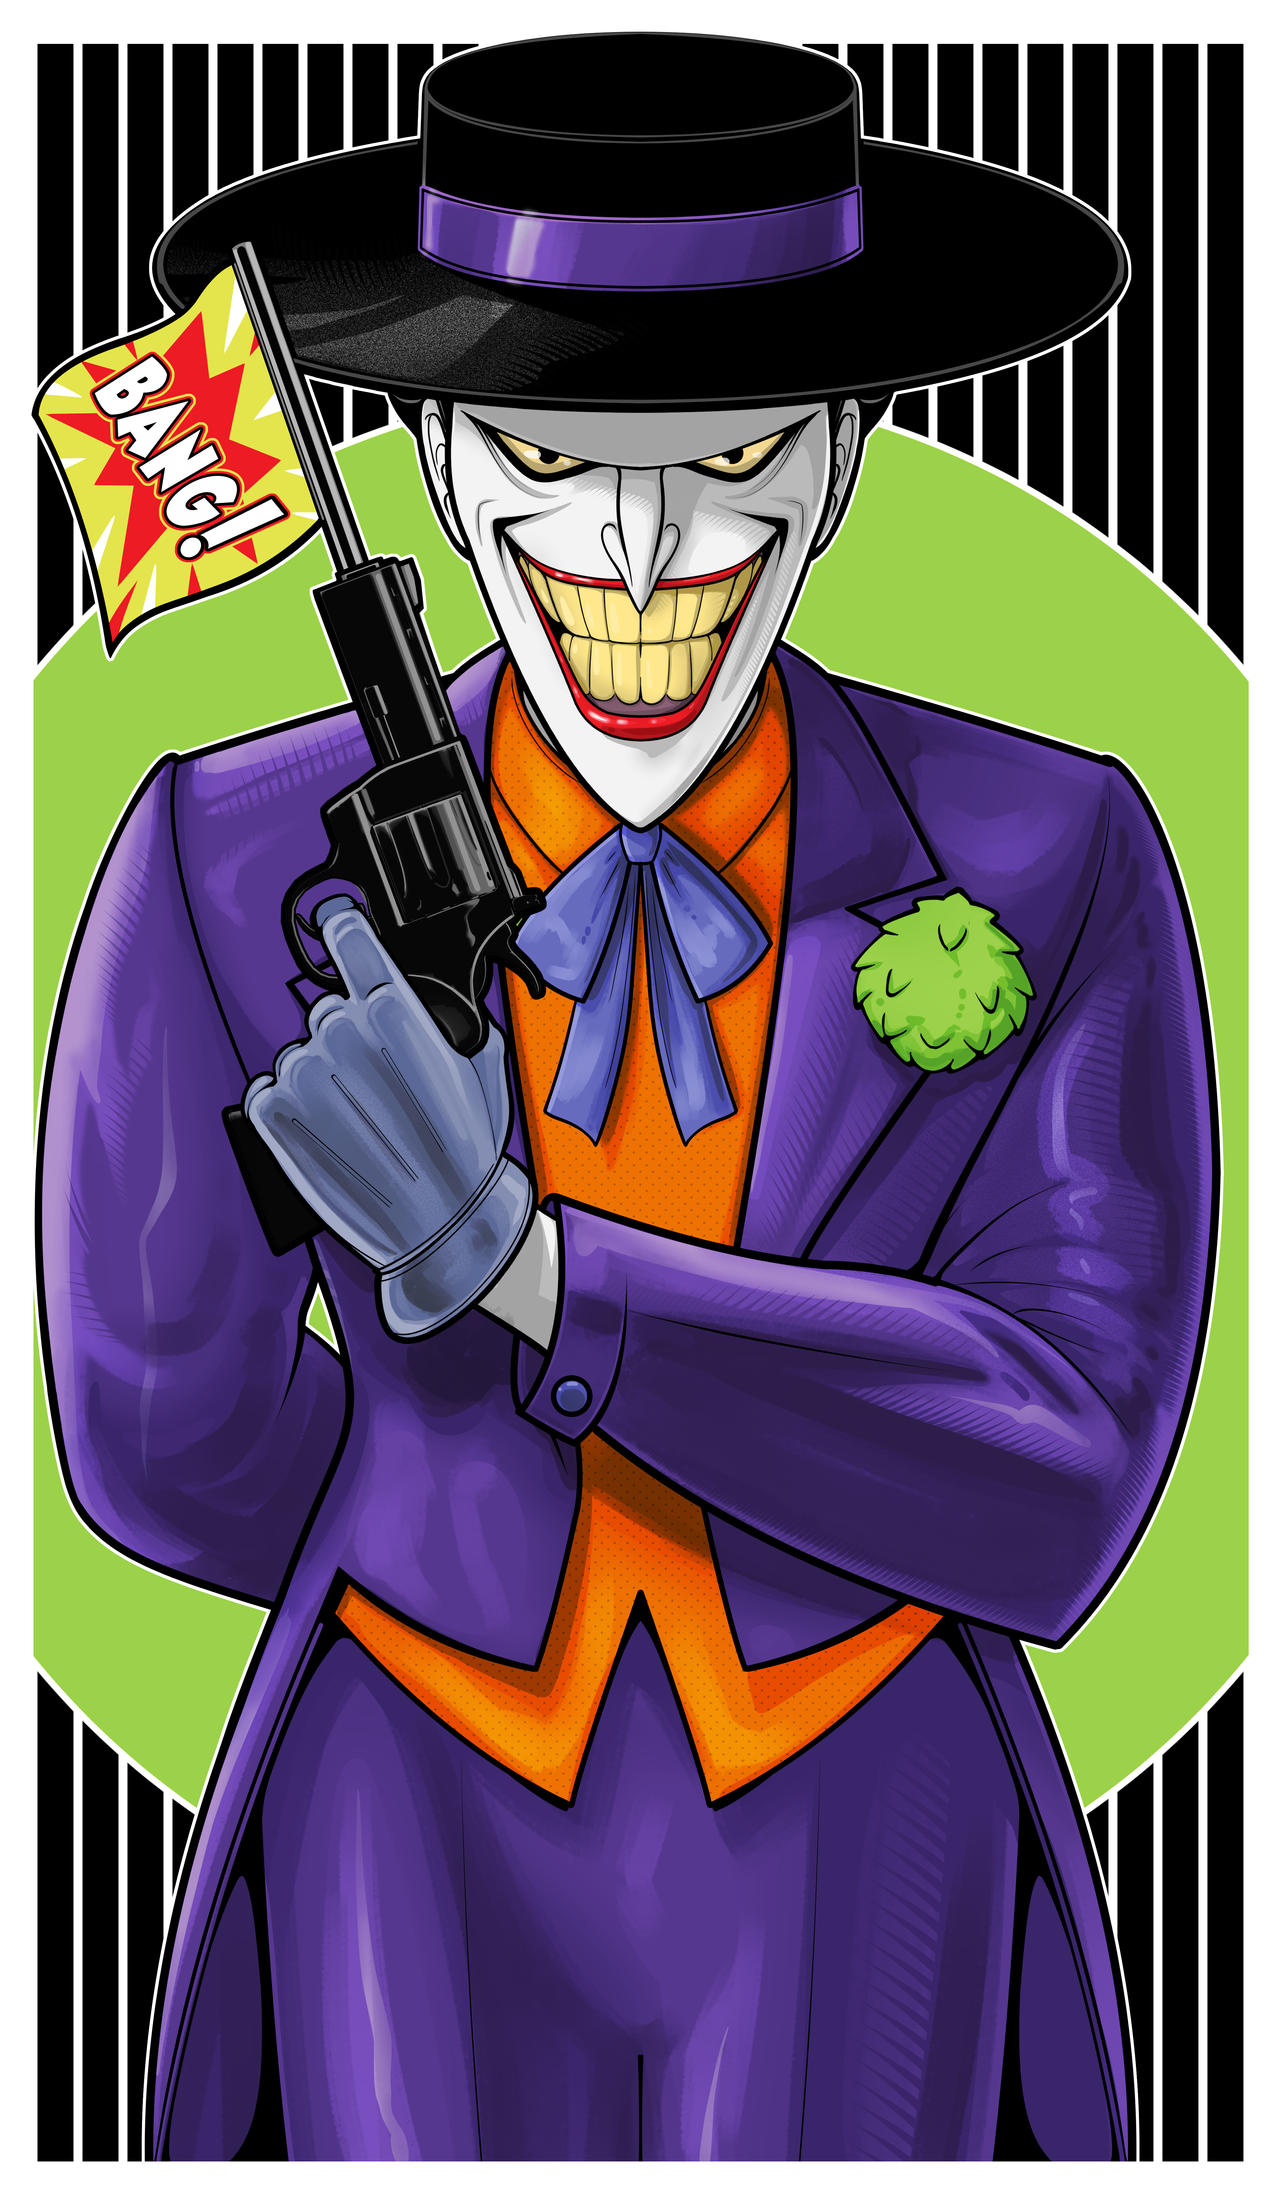 Joker Animated Icon by Thuddleston on DeviantArt